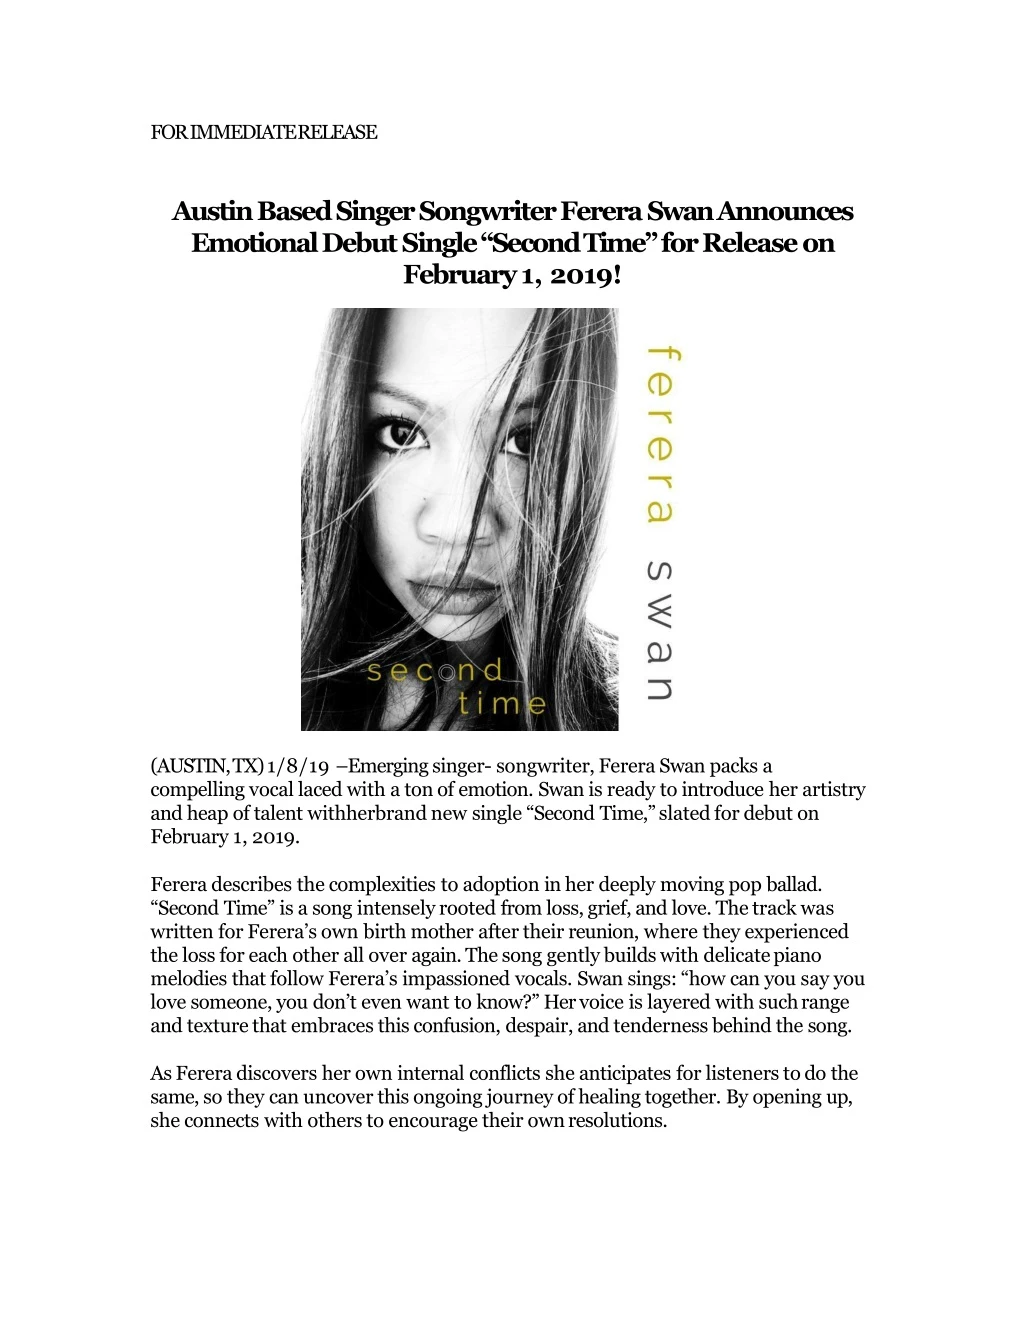 for immediate release austin based singer